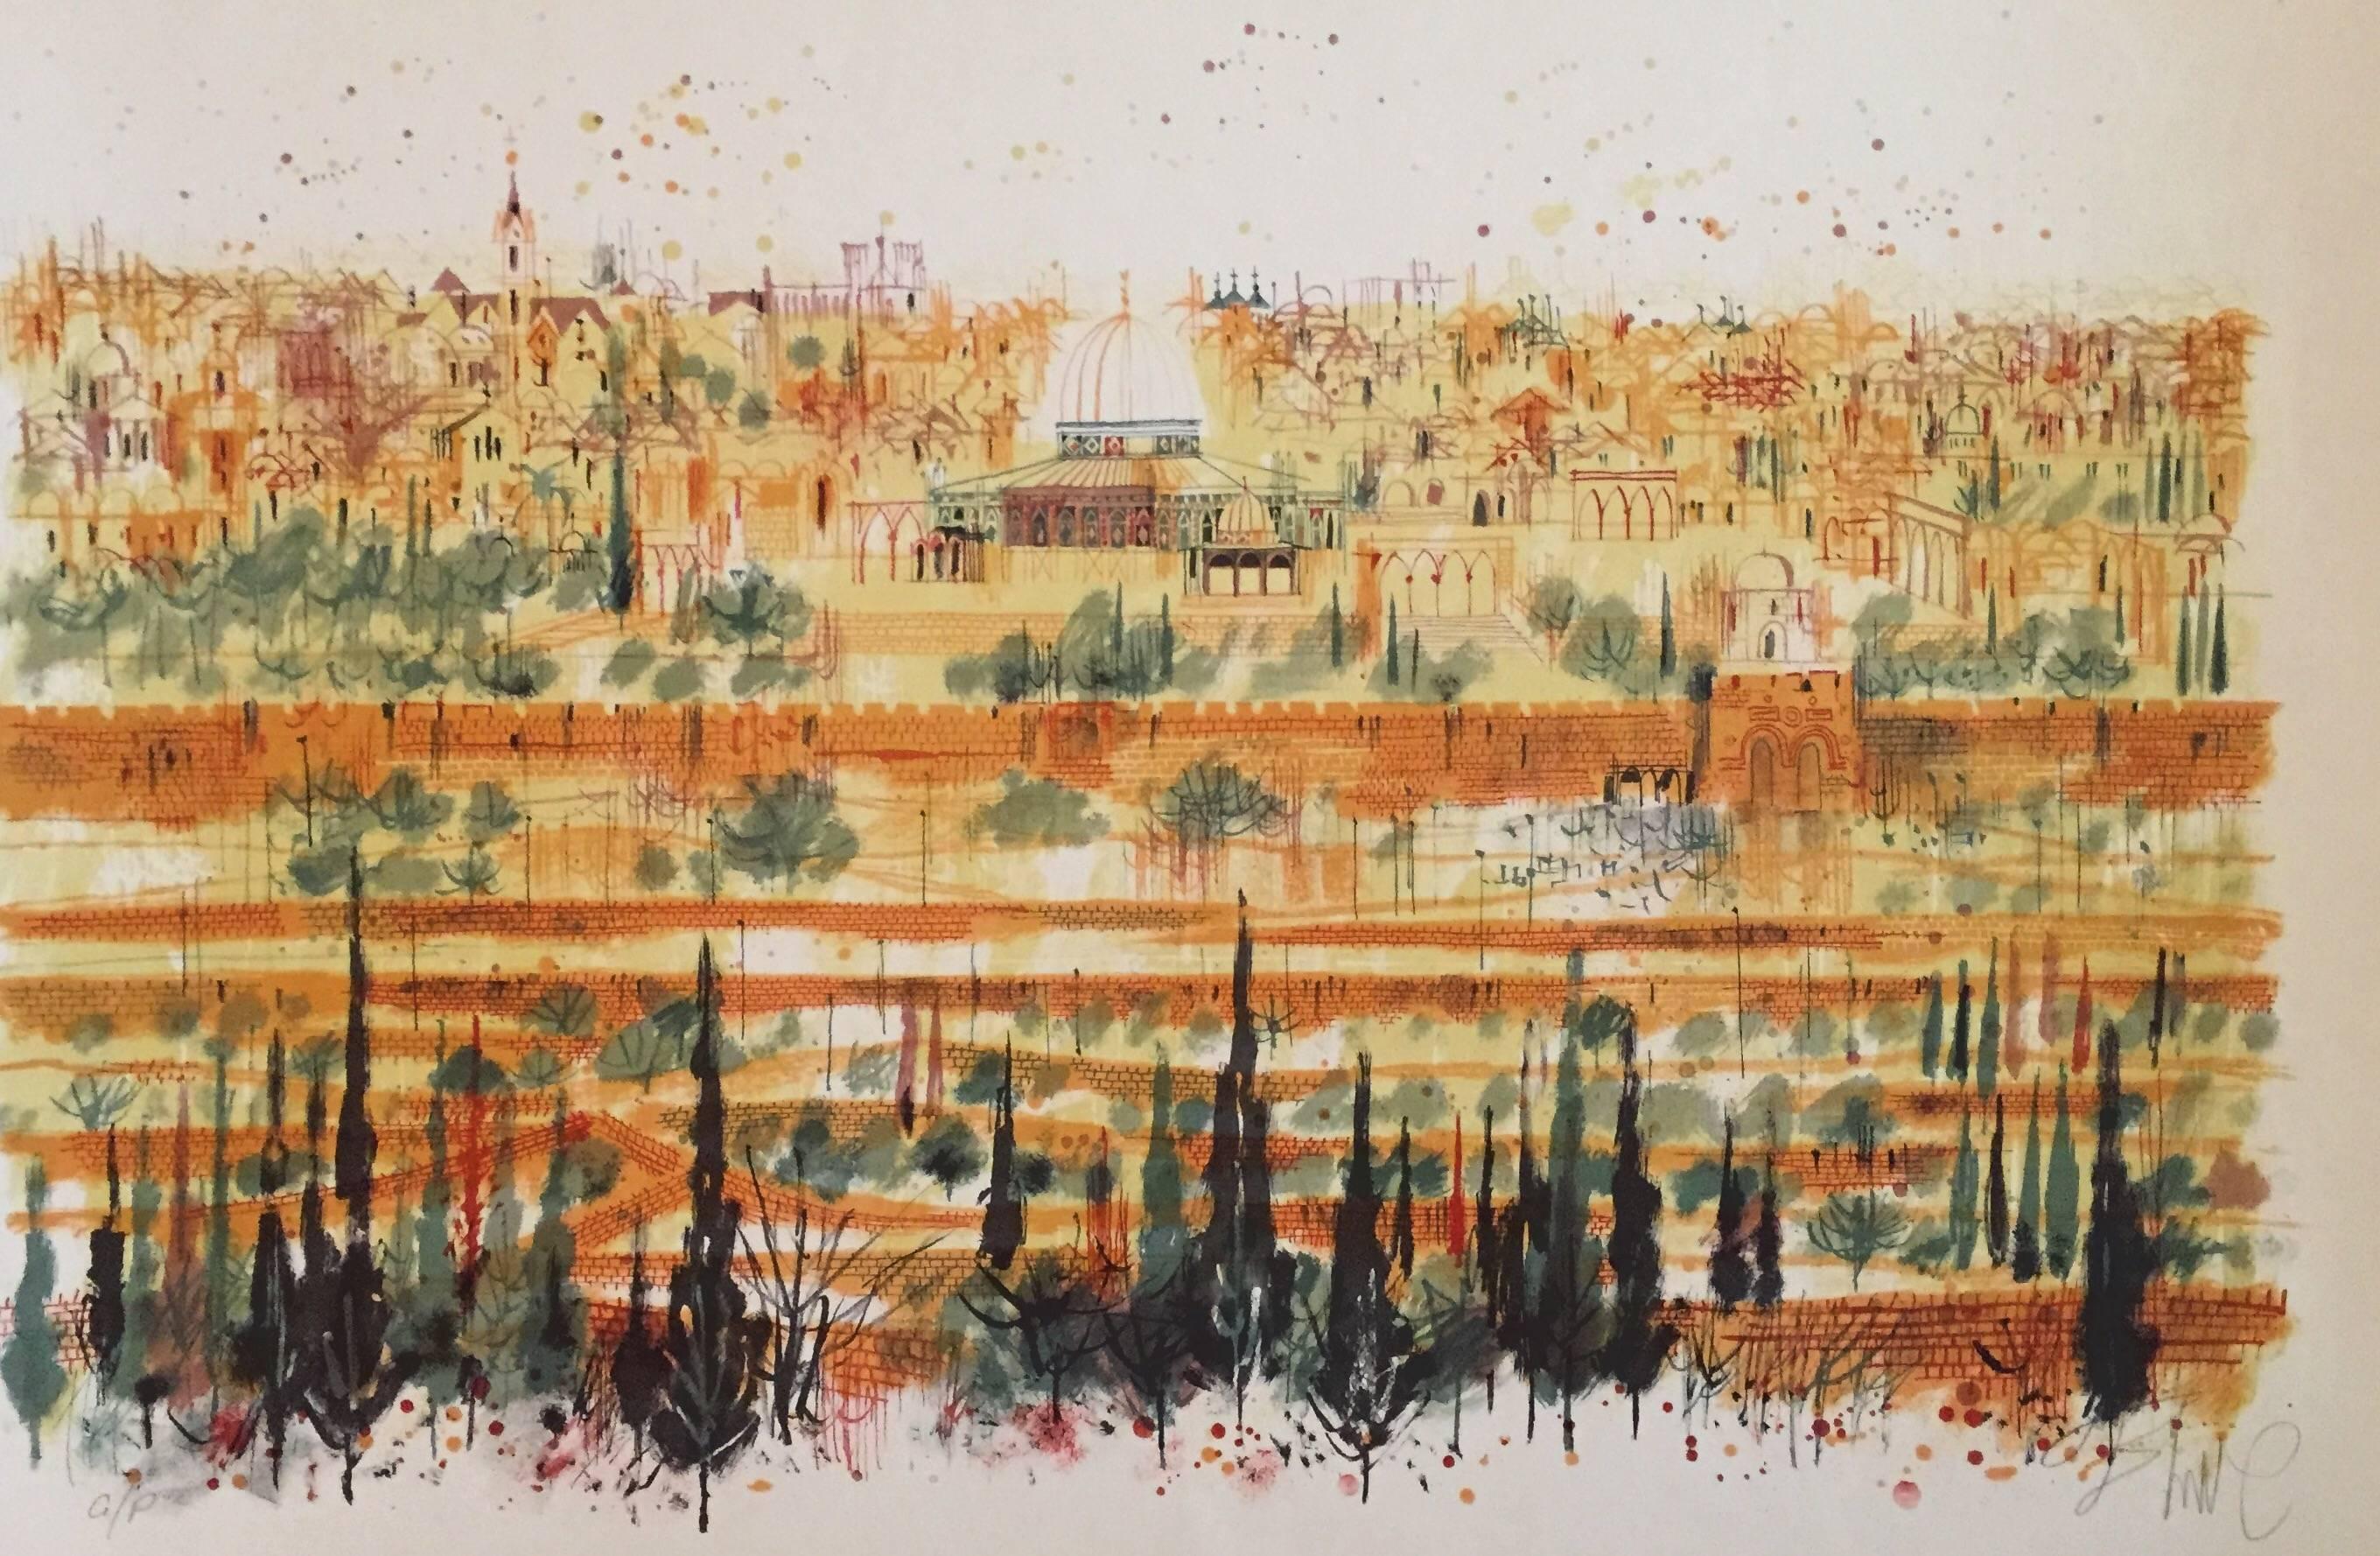 The Old City of Jerusalem - Modern Print by Shmuel Katz